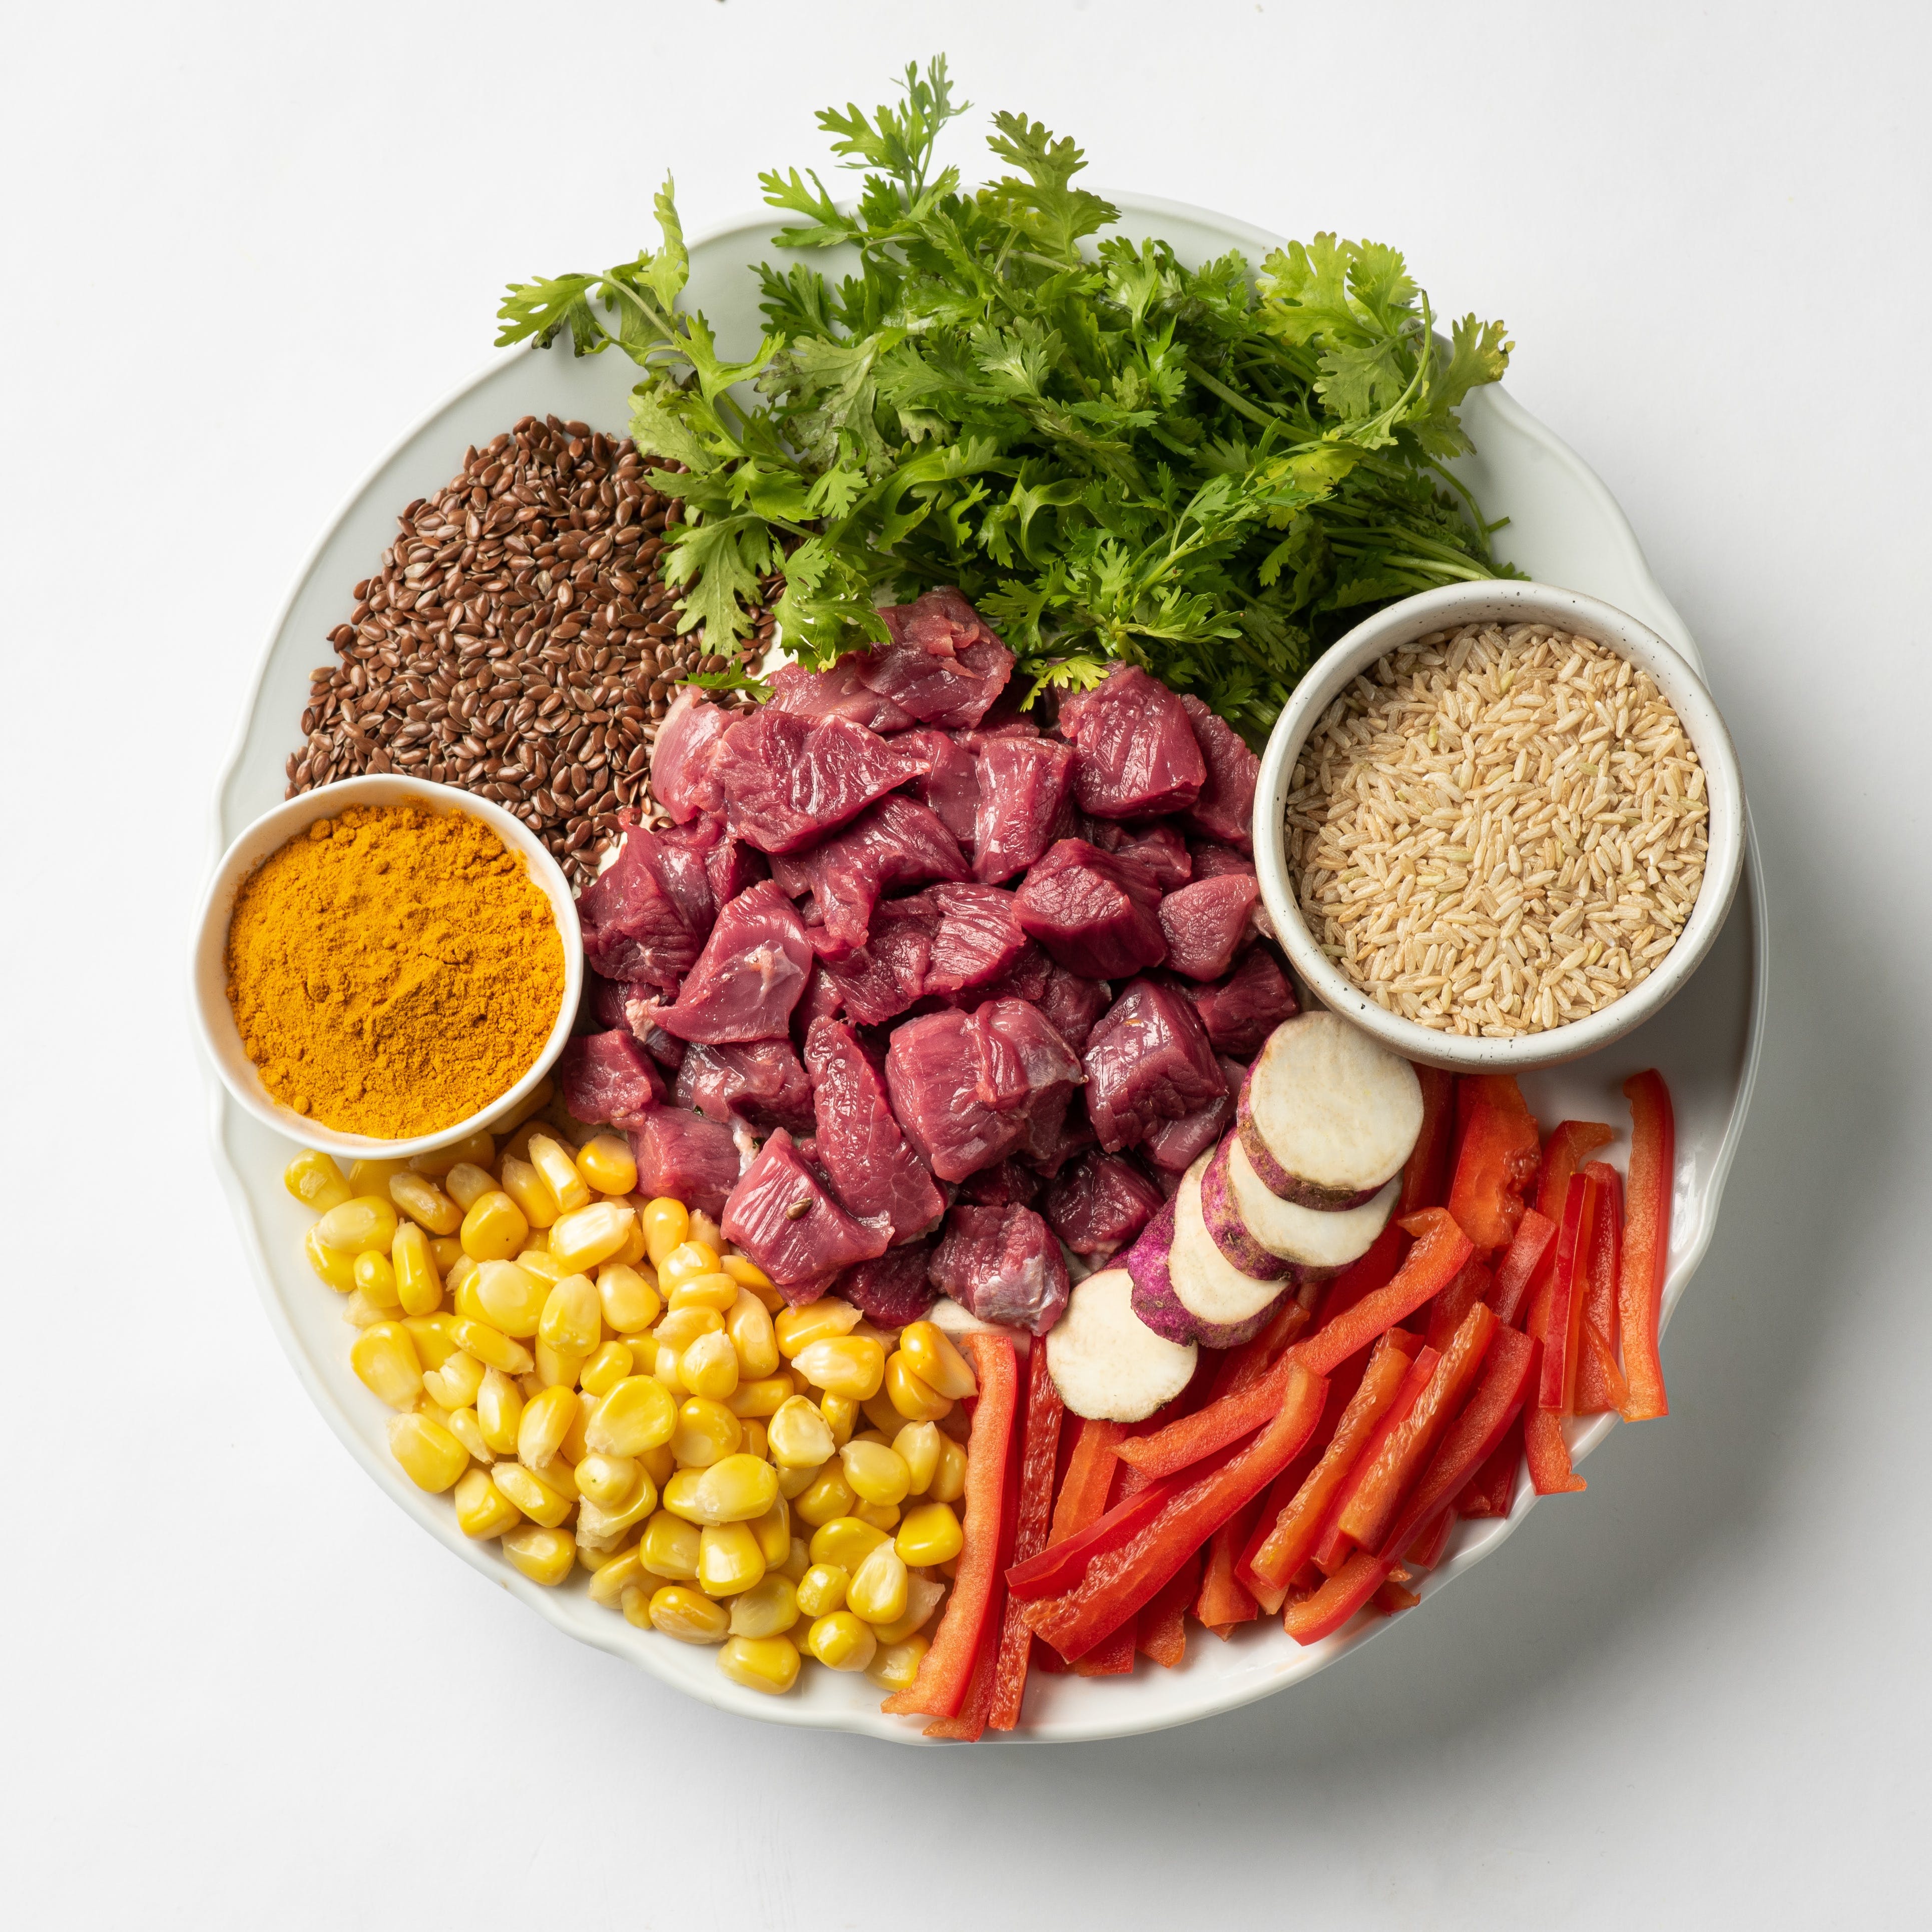 Ingredient,Bowl,Produce,Food group,Leaf vegetable,Herb,Root vegetable,Vegetable,Superfood,Legume